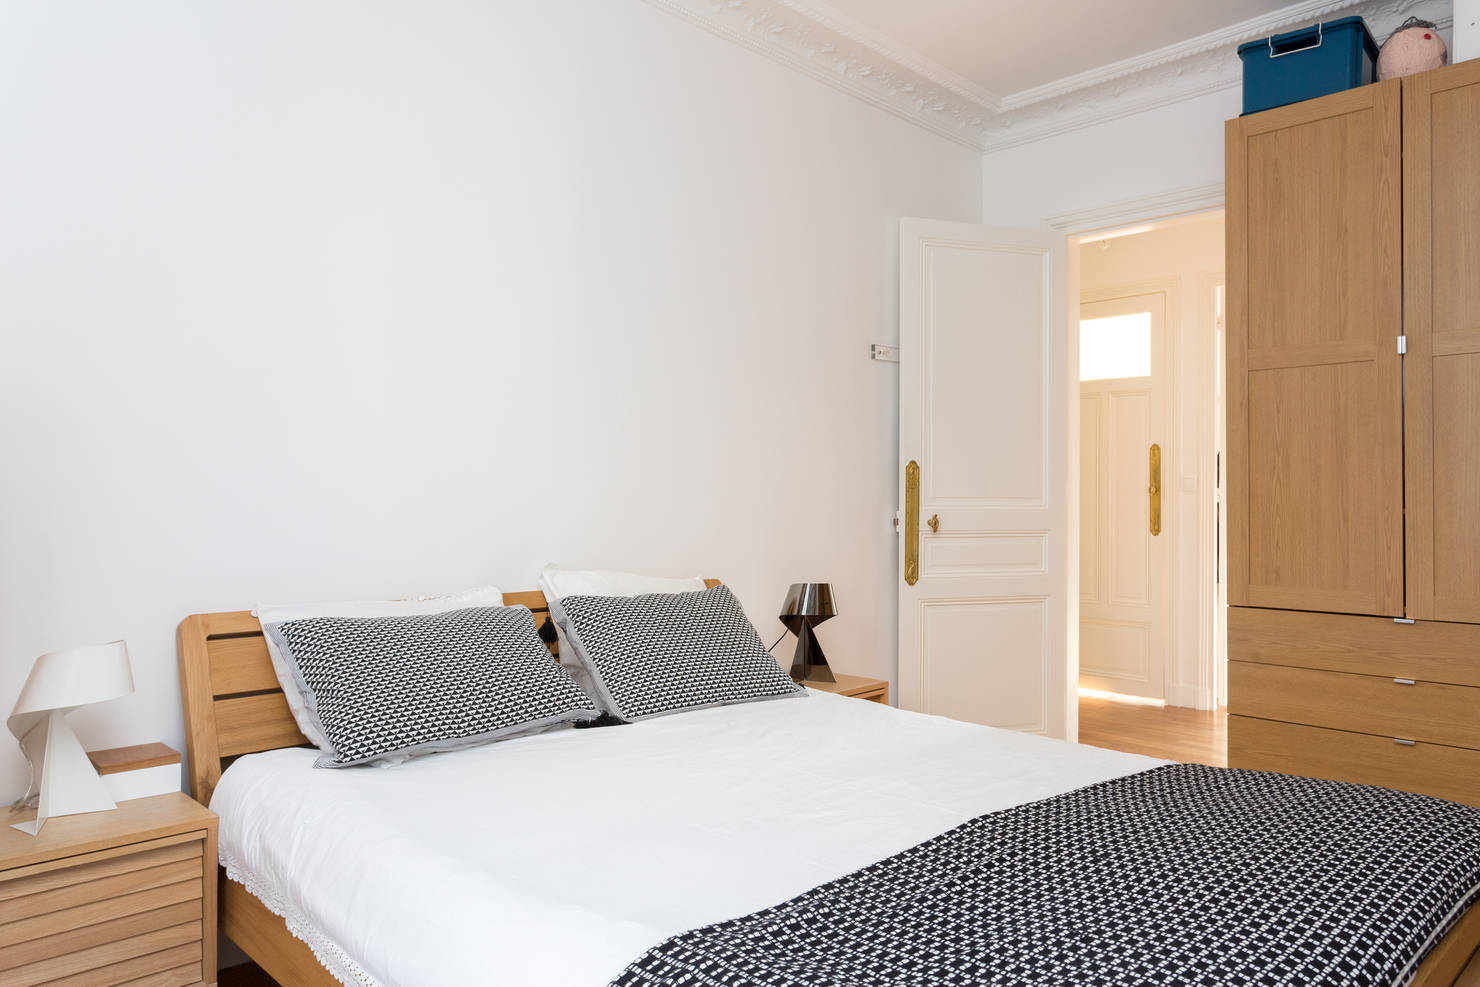 16 отличных идей для дизайна спальни- фотографии
				